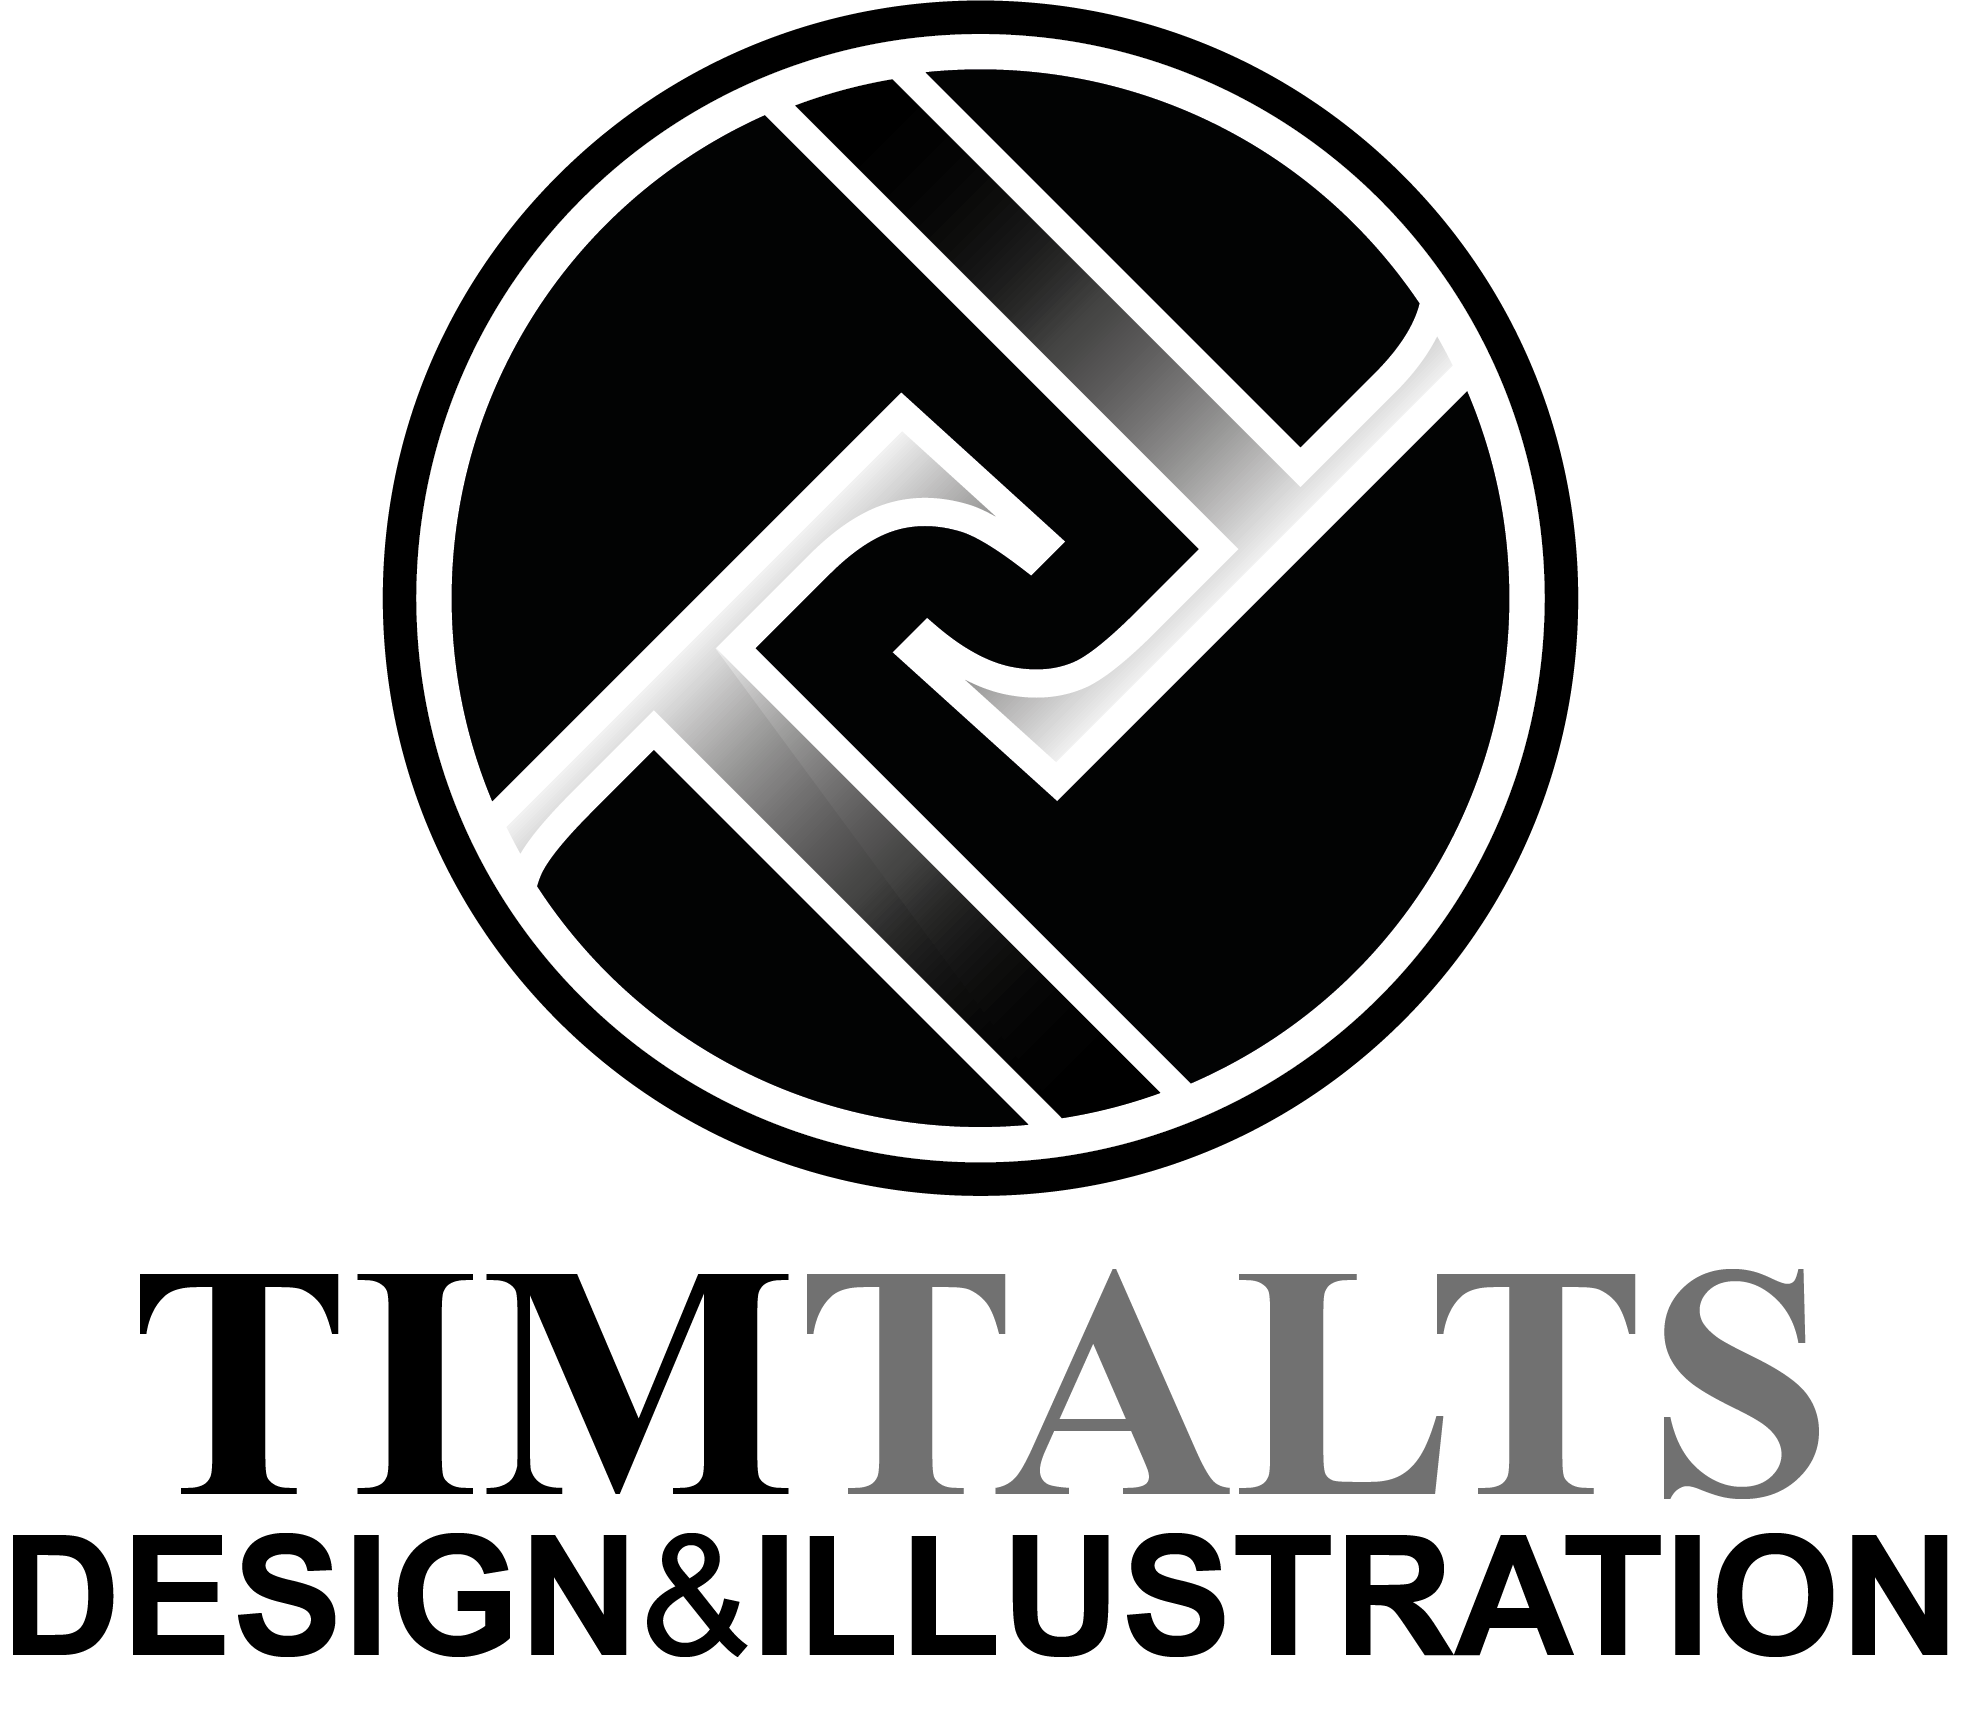 Tim Talts